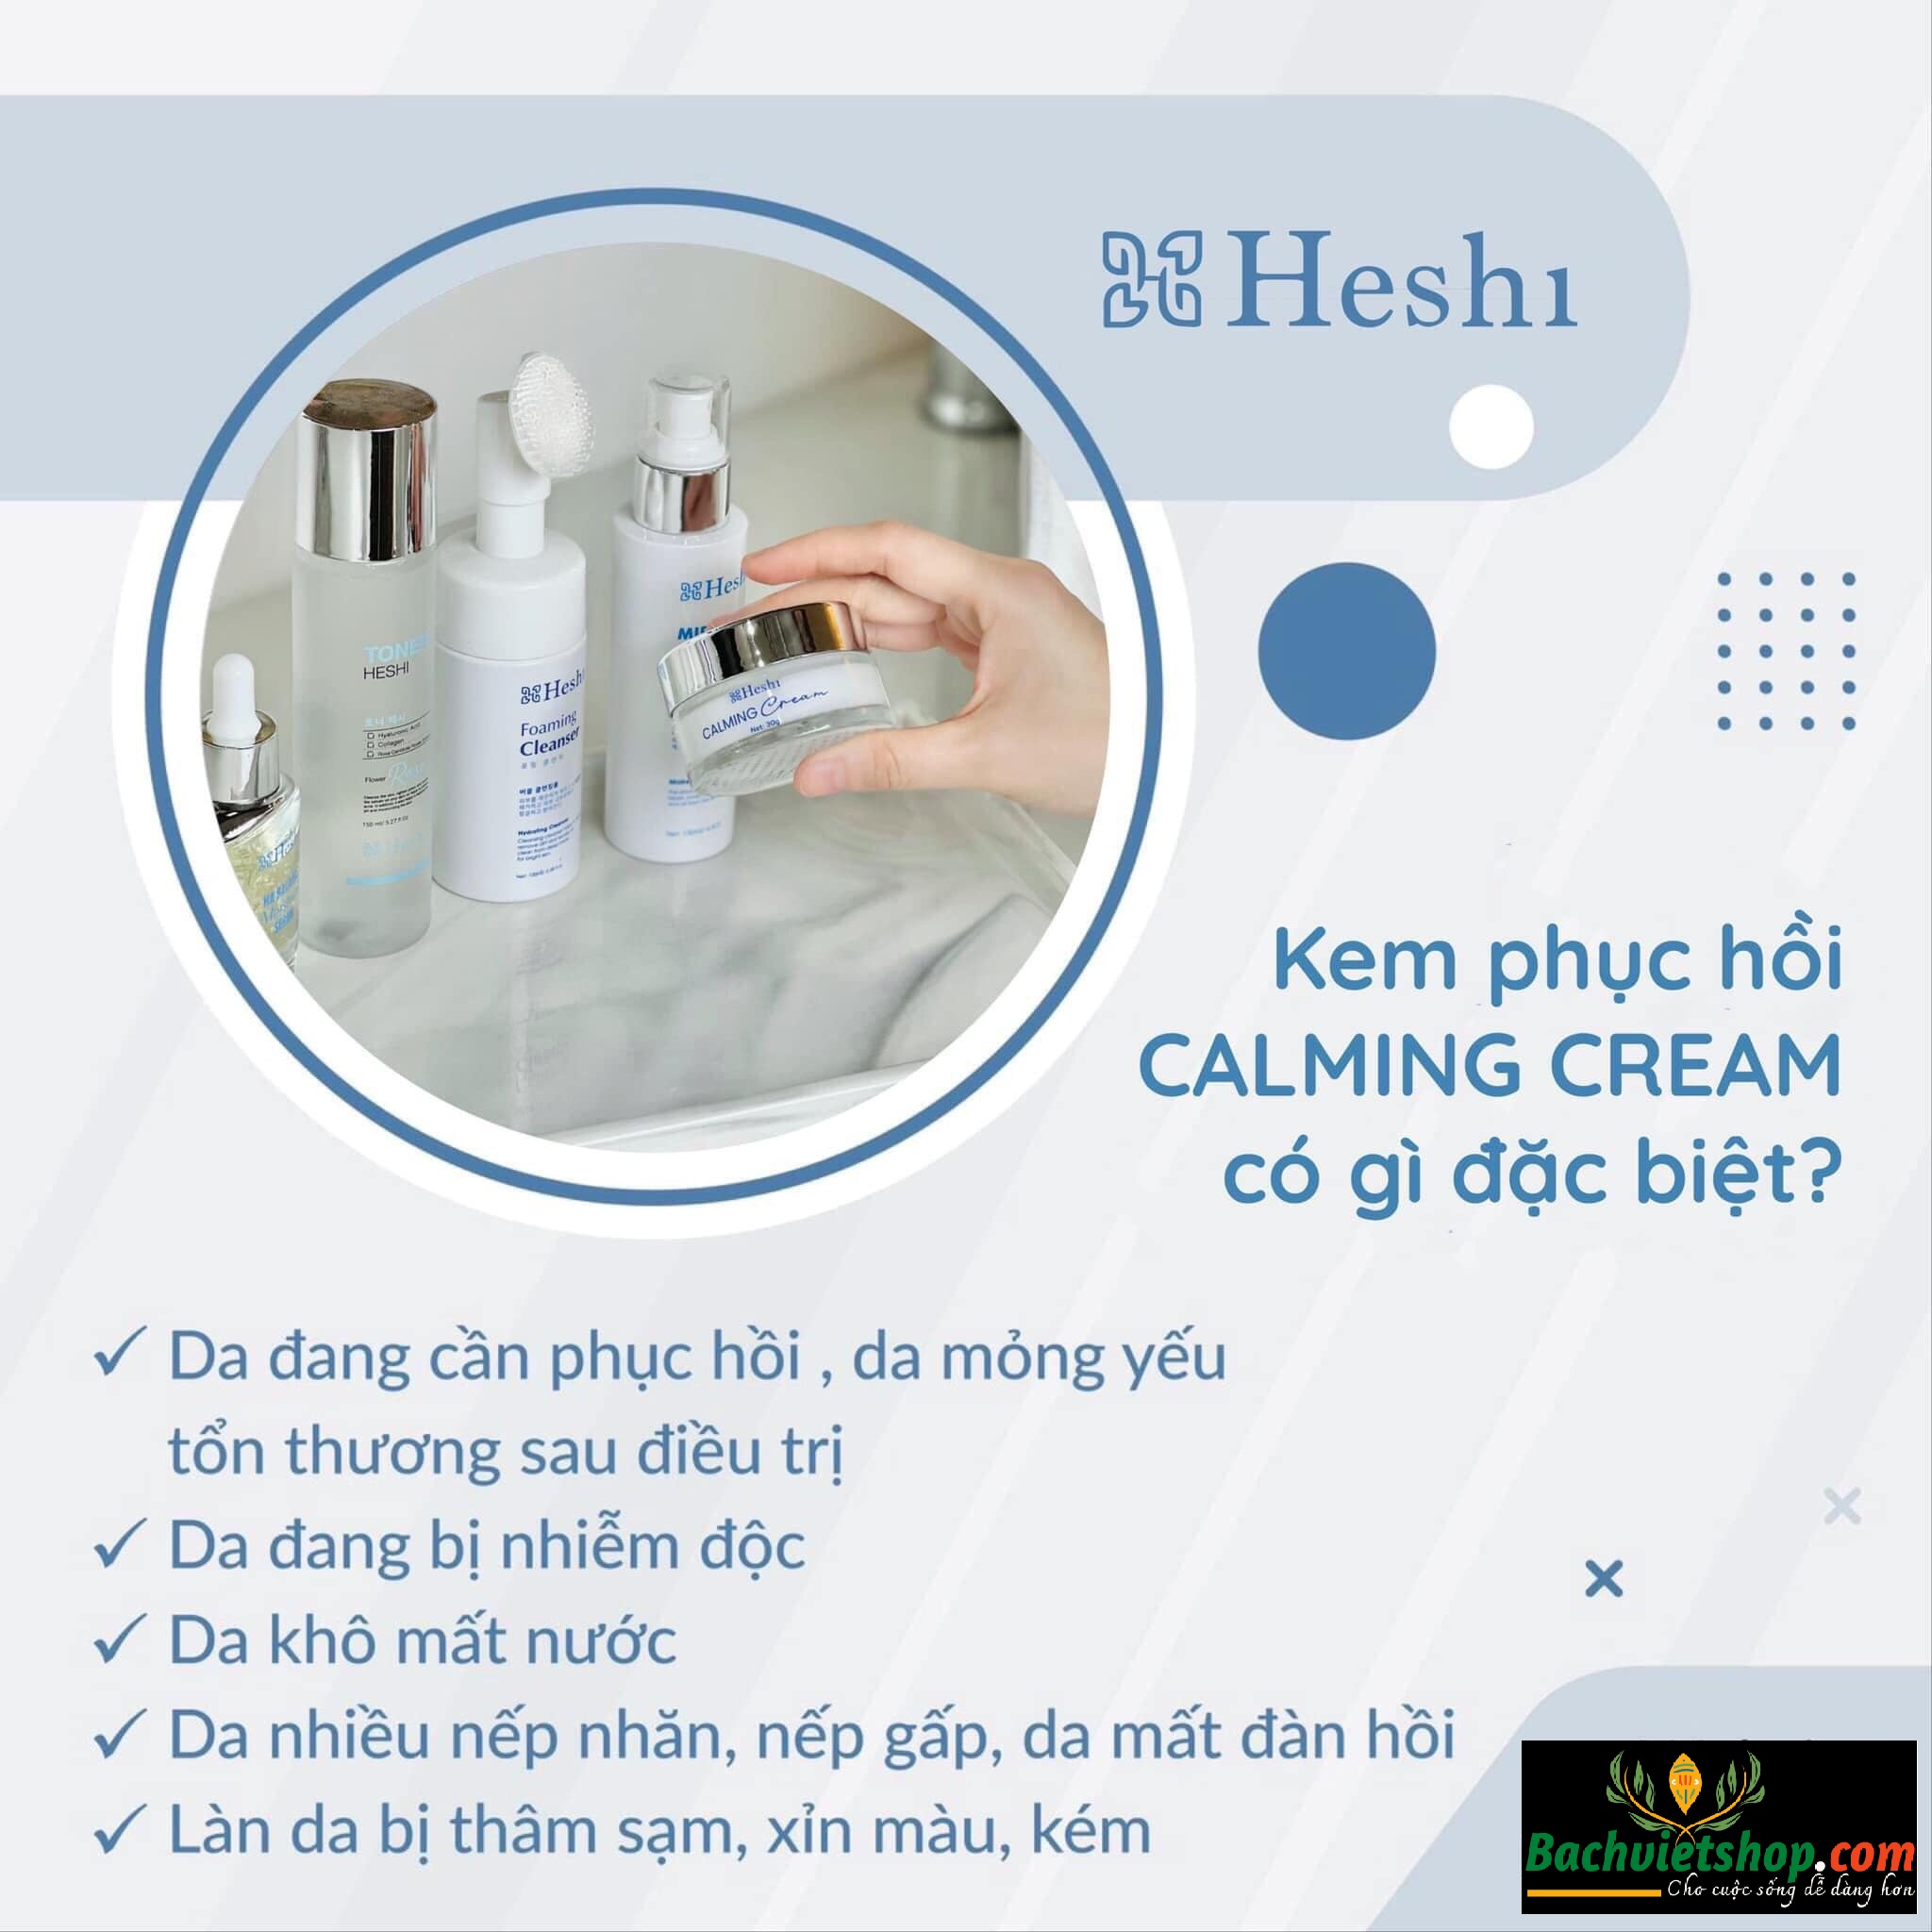 Kem dưỡng Heshi Calming Cream - Người bạn đồng hành không thể thay thế giúp chăm sóc và phục hồi da bị tổn thương một cách nhanh nhất!